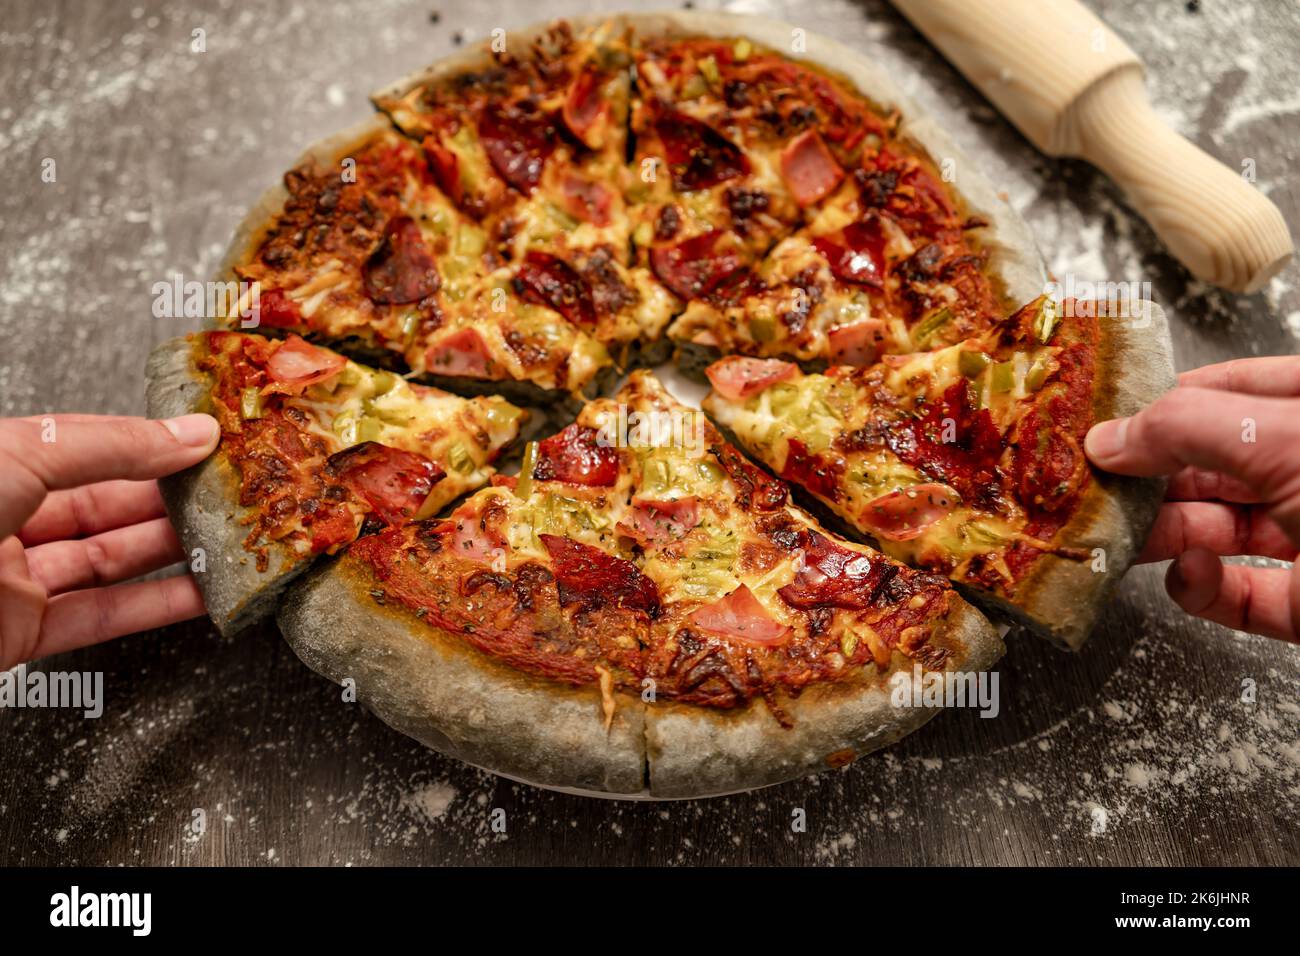 Junge Leute, die sich innovative, mit grauem Teig gebackene Pizza teilen. Gesundes Essen, hausgemachte italienische Küche. Stockfoto